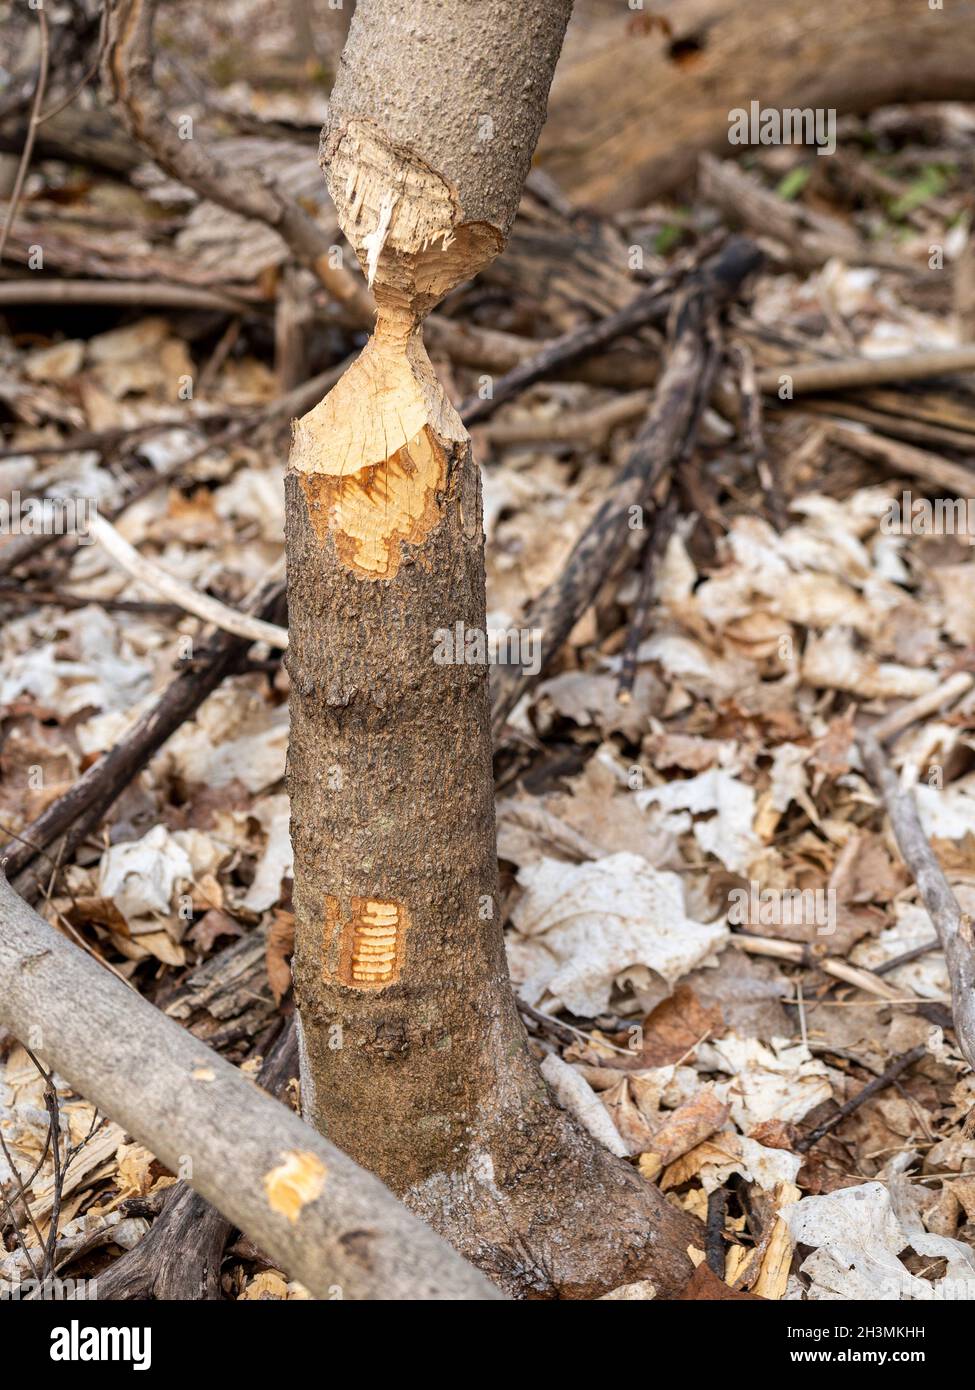 Casi: Un sapling casi cortado a través por un castor: Un tronco pequeño del árbol masticado por un castor hasta que está a punto de caer. Todavía de pie hasta la próxima sesión de corte. Foto de stock